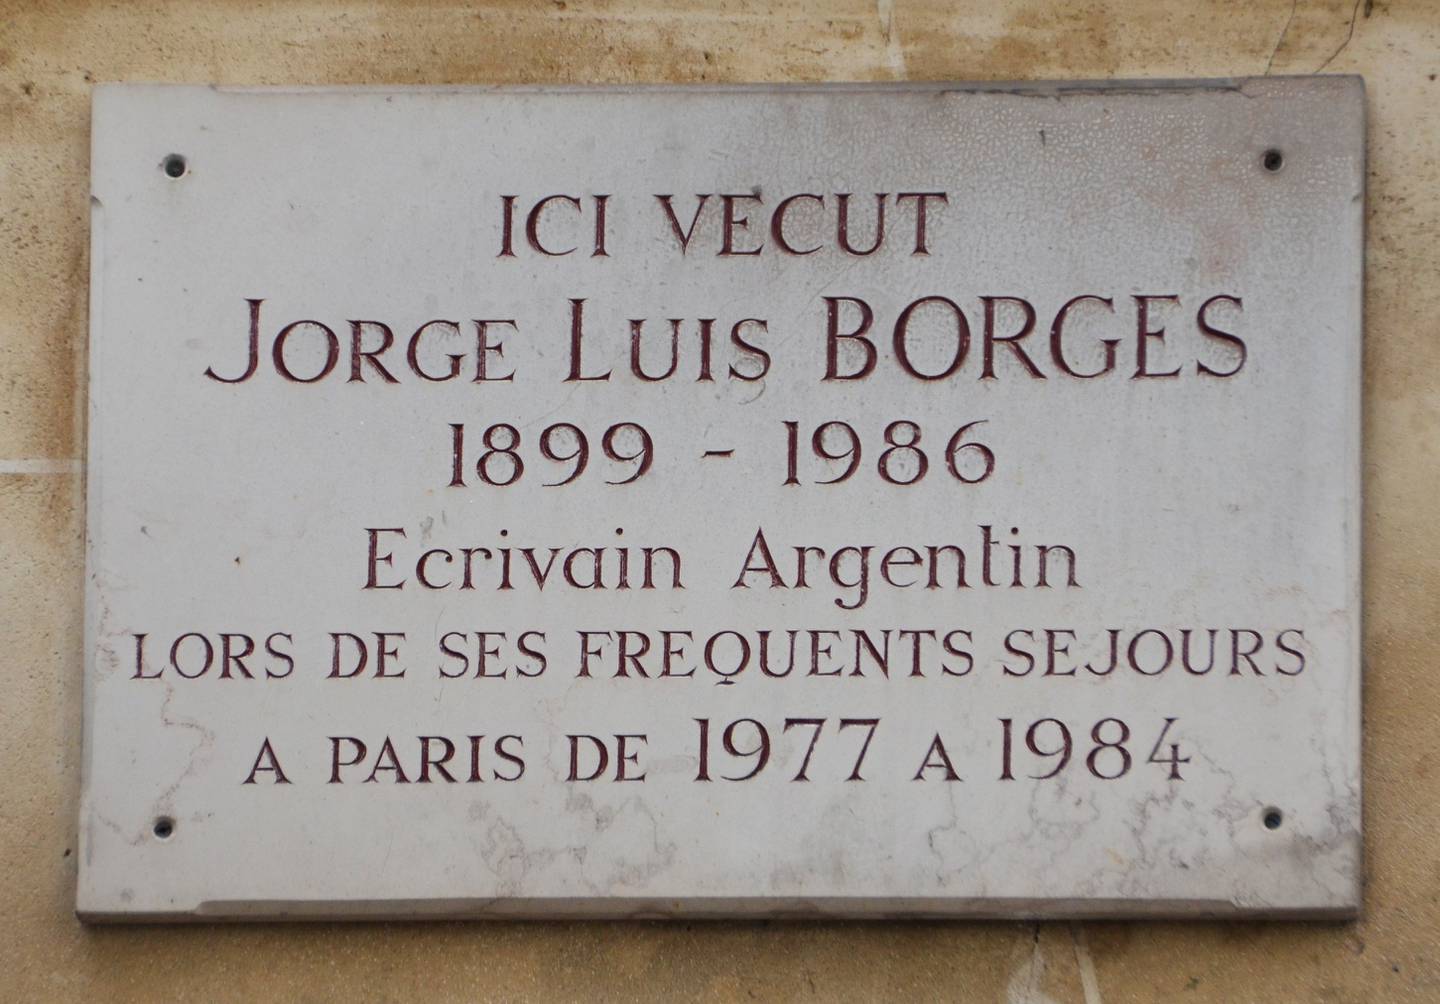 Placa de Jorge Luis Borges - rue des Beaux Arts, París 6dfd